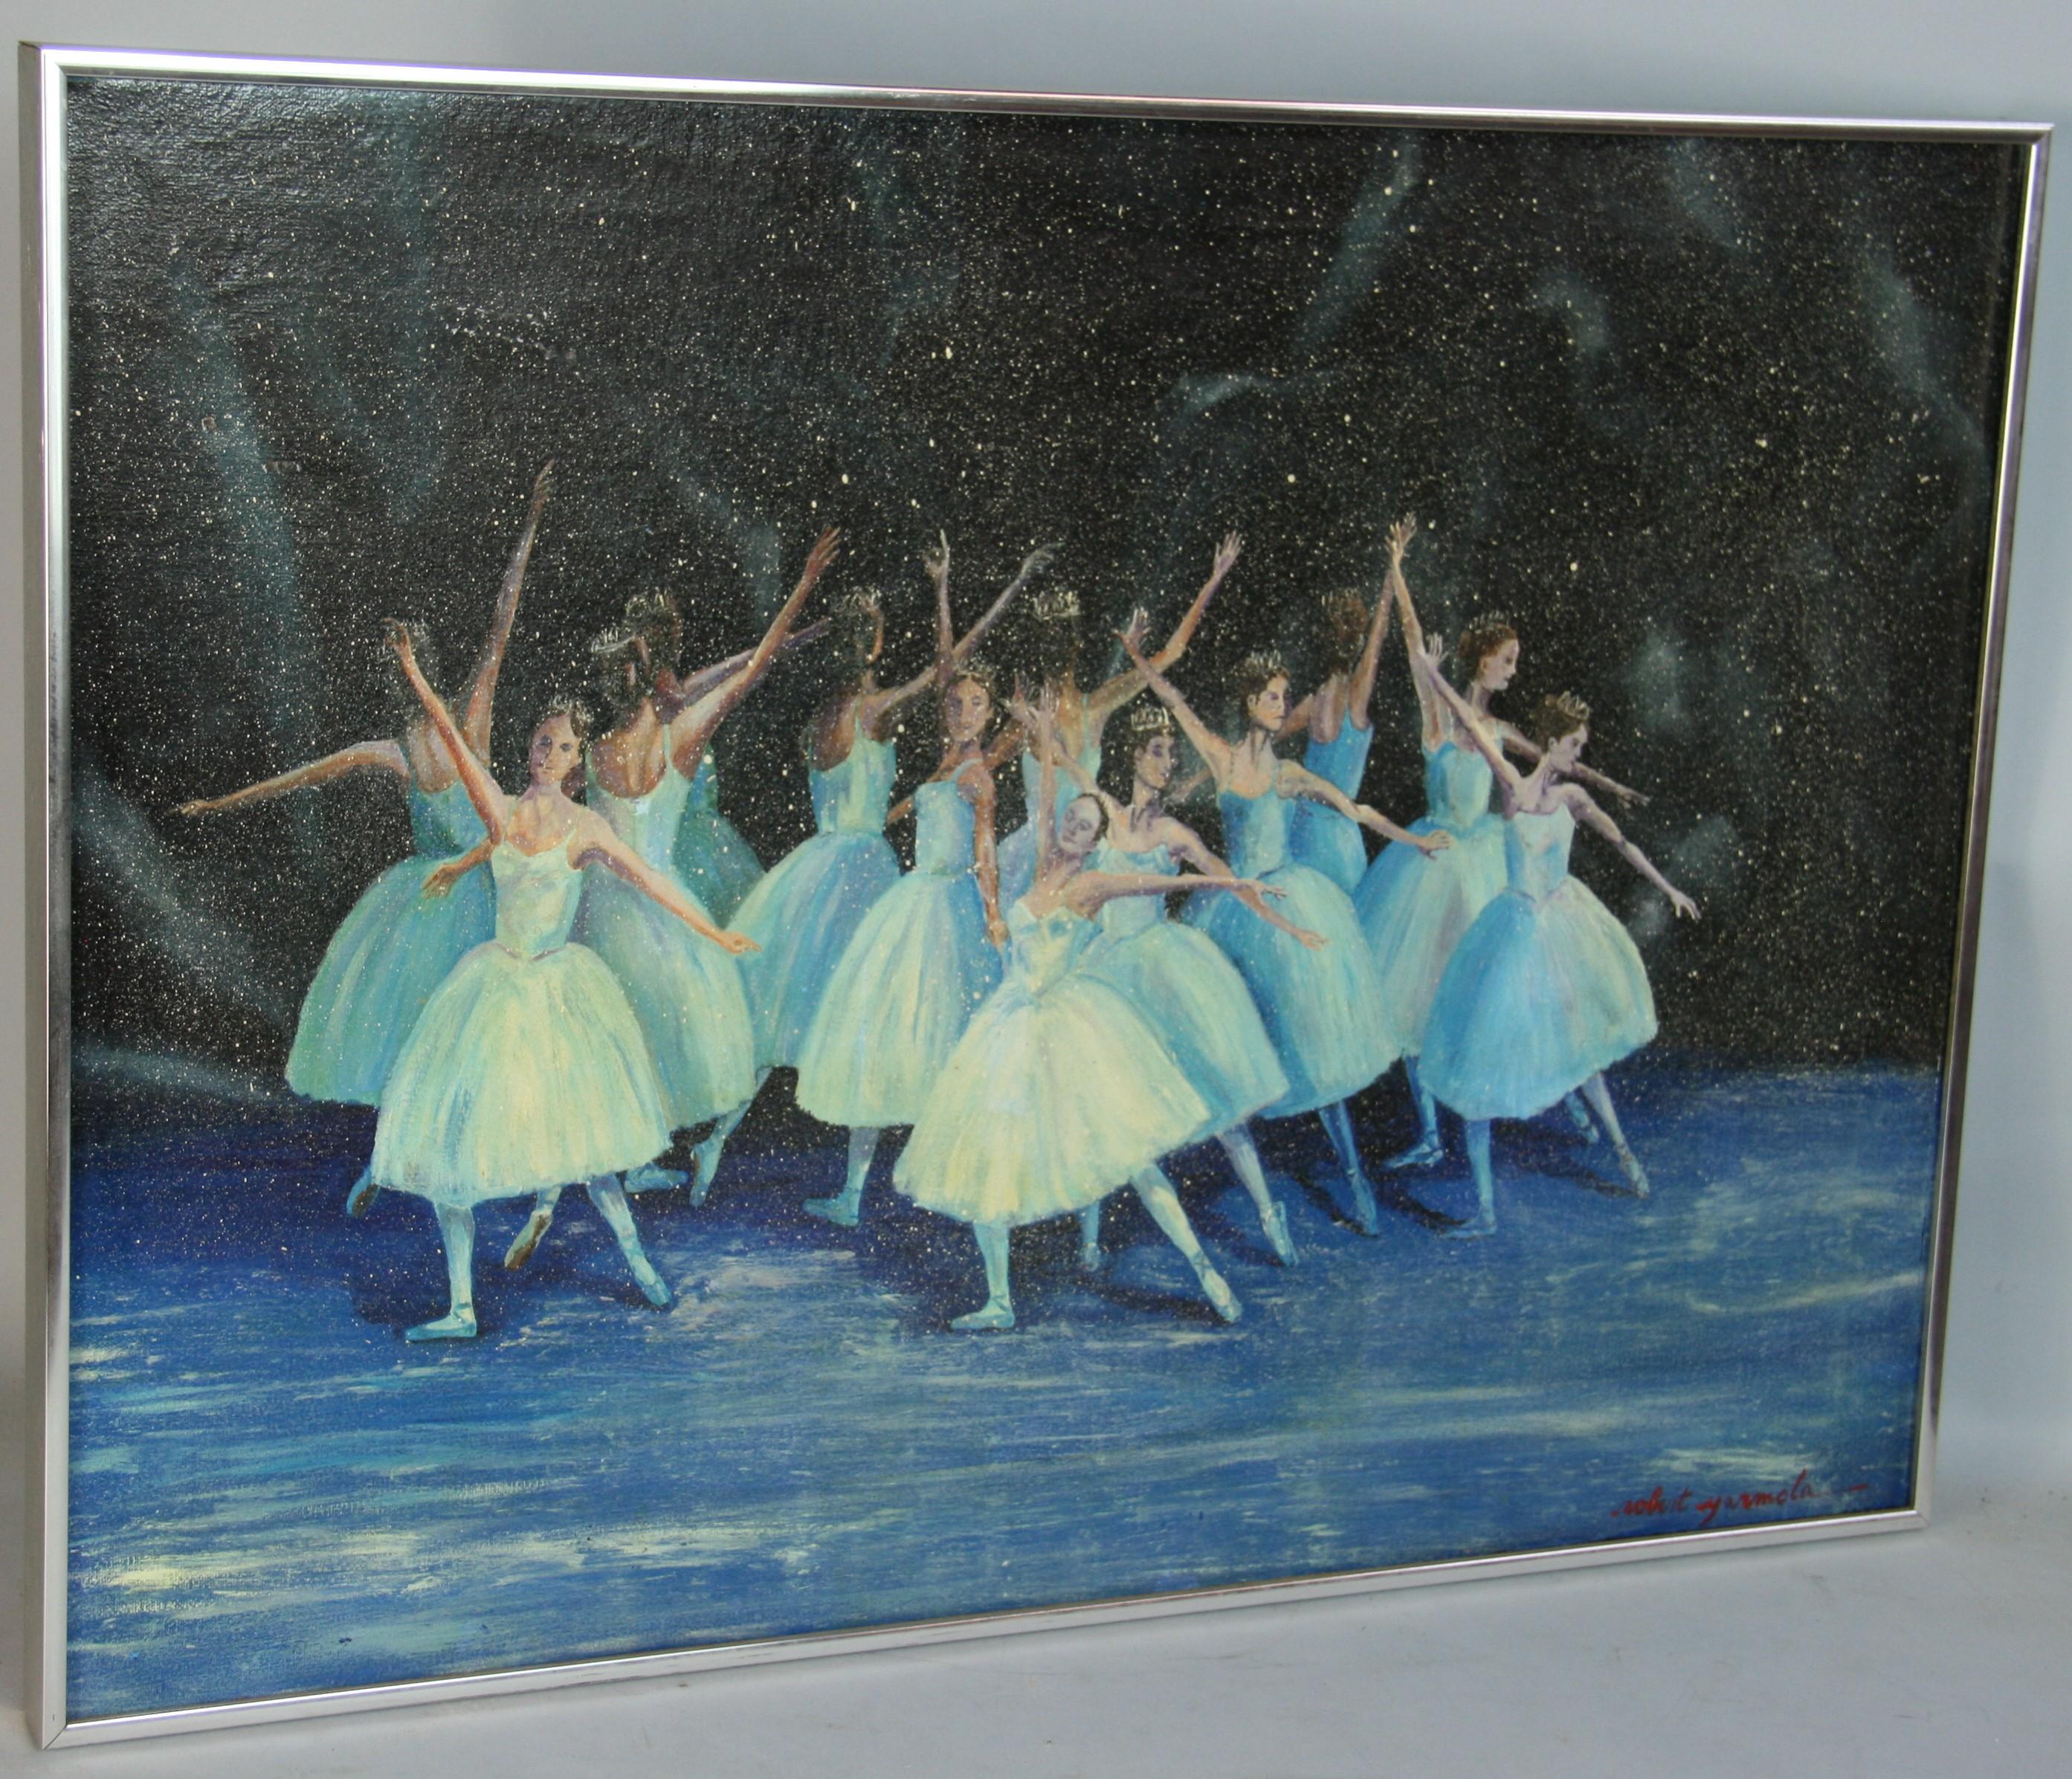 Impressionistische Ballettperformance im Vintage-Stil von Robert Yarmola – Painting von Unknown